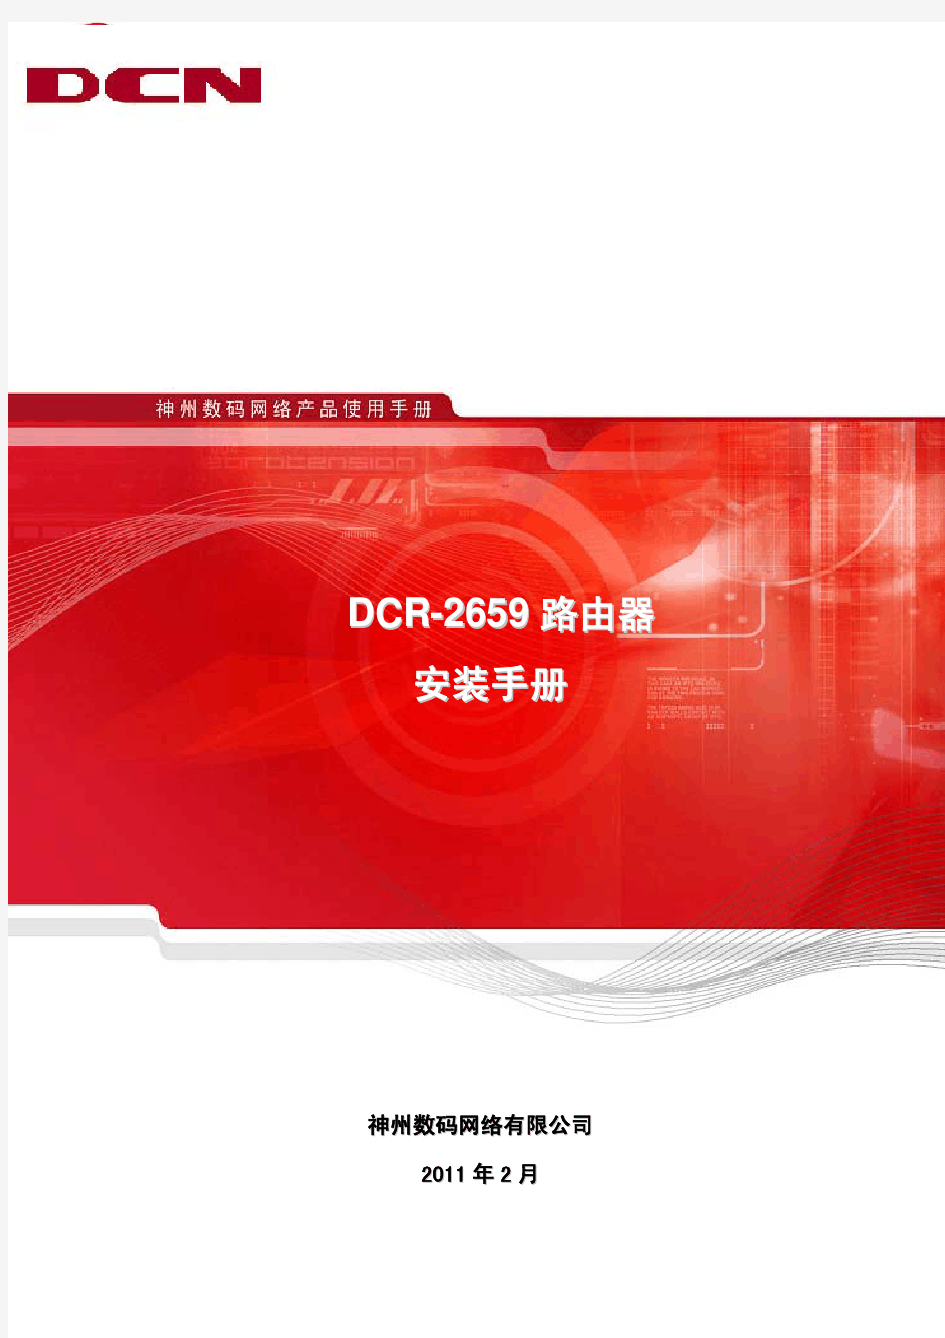 DCR-2659路由器硬件安装手册